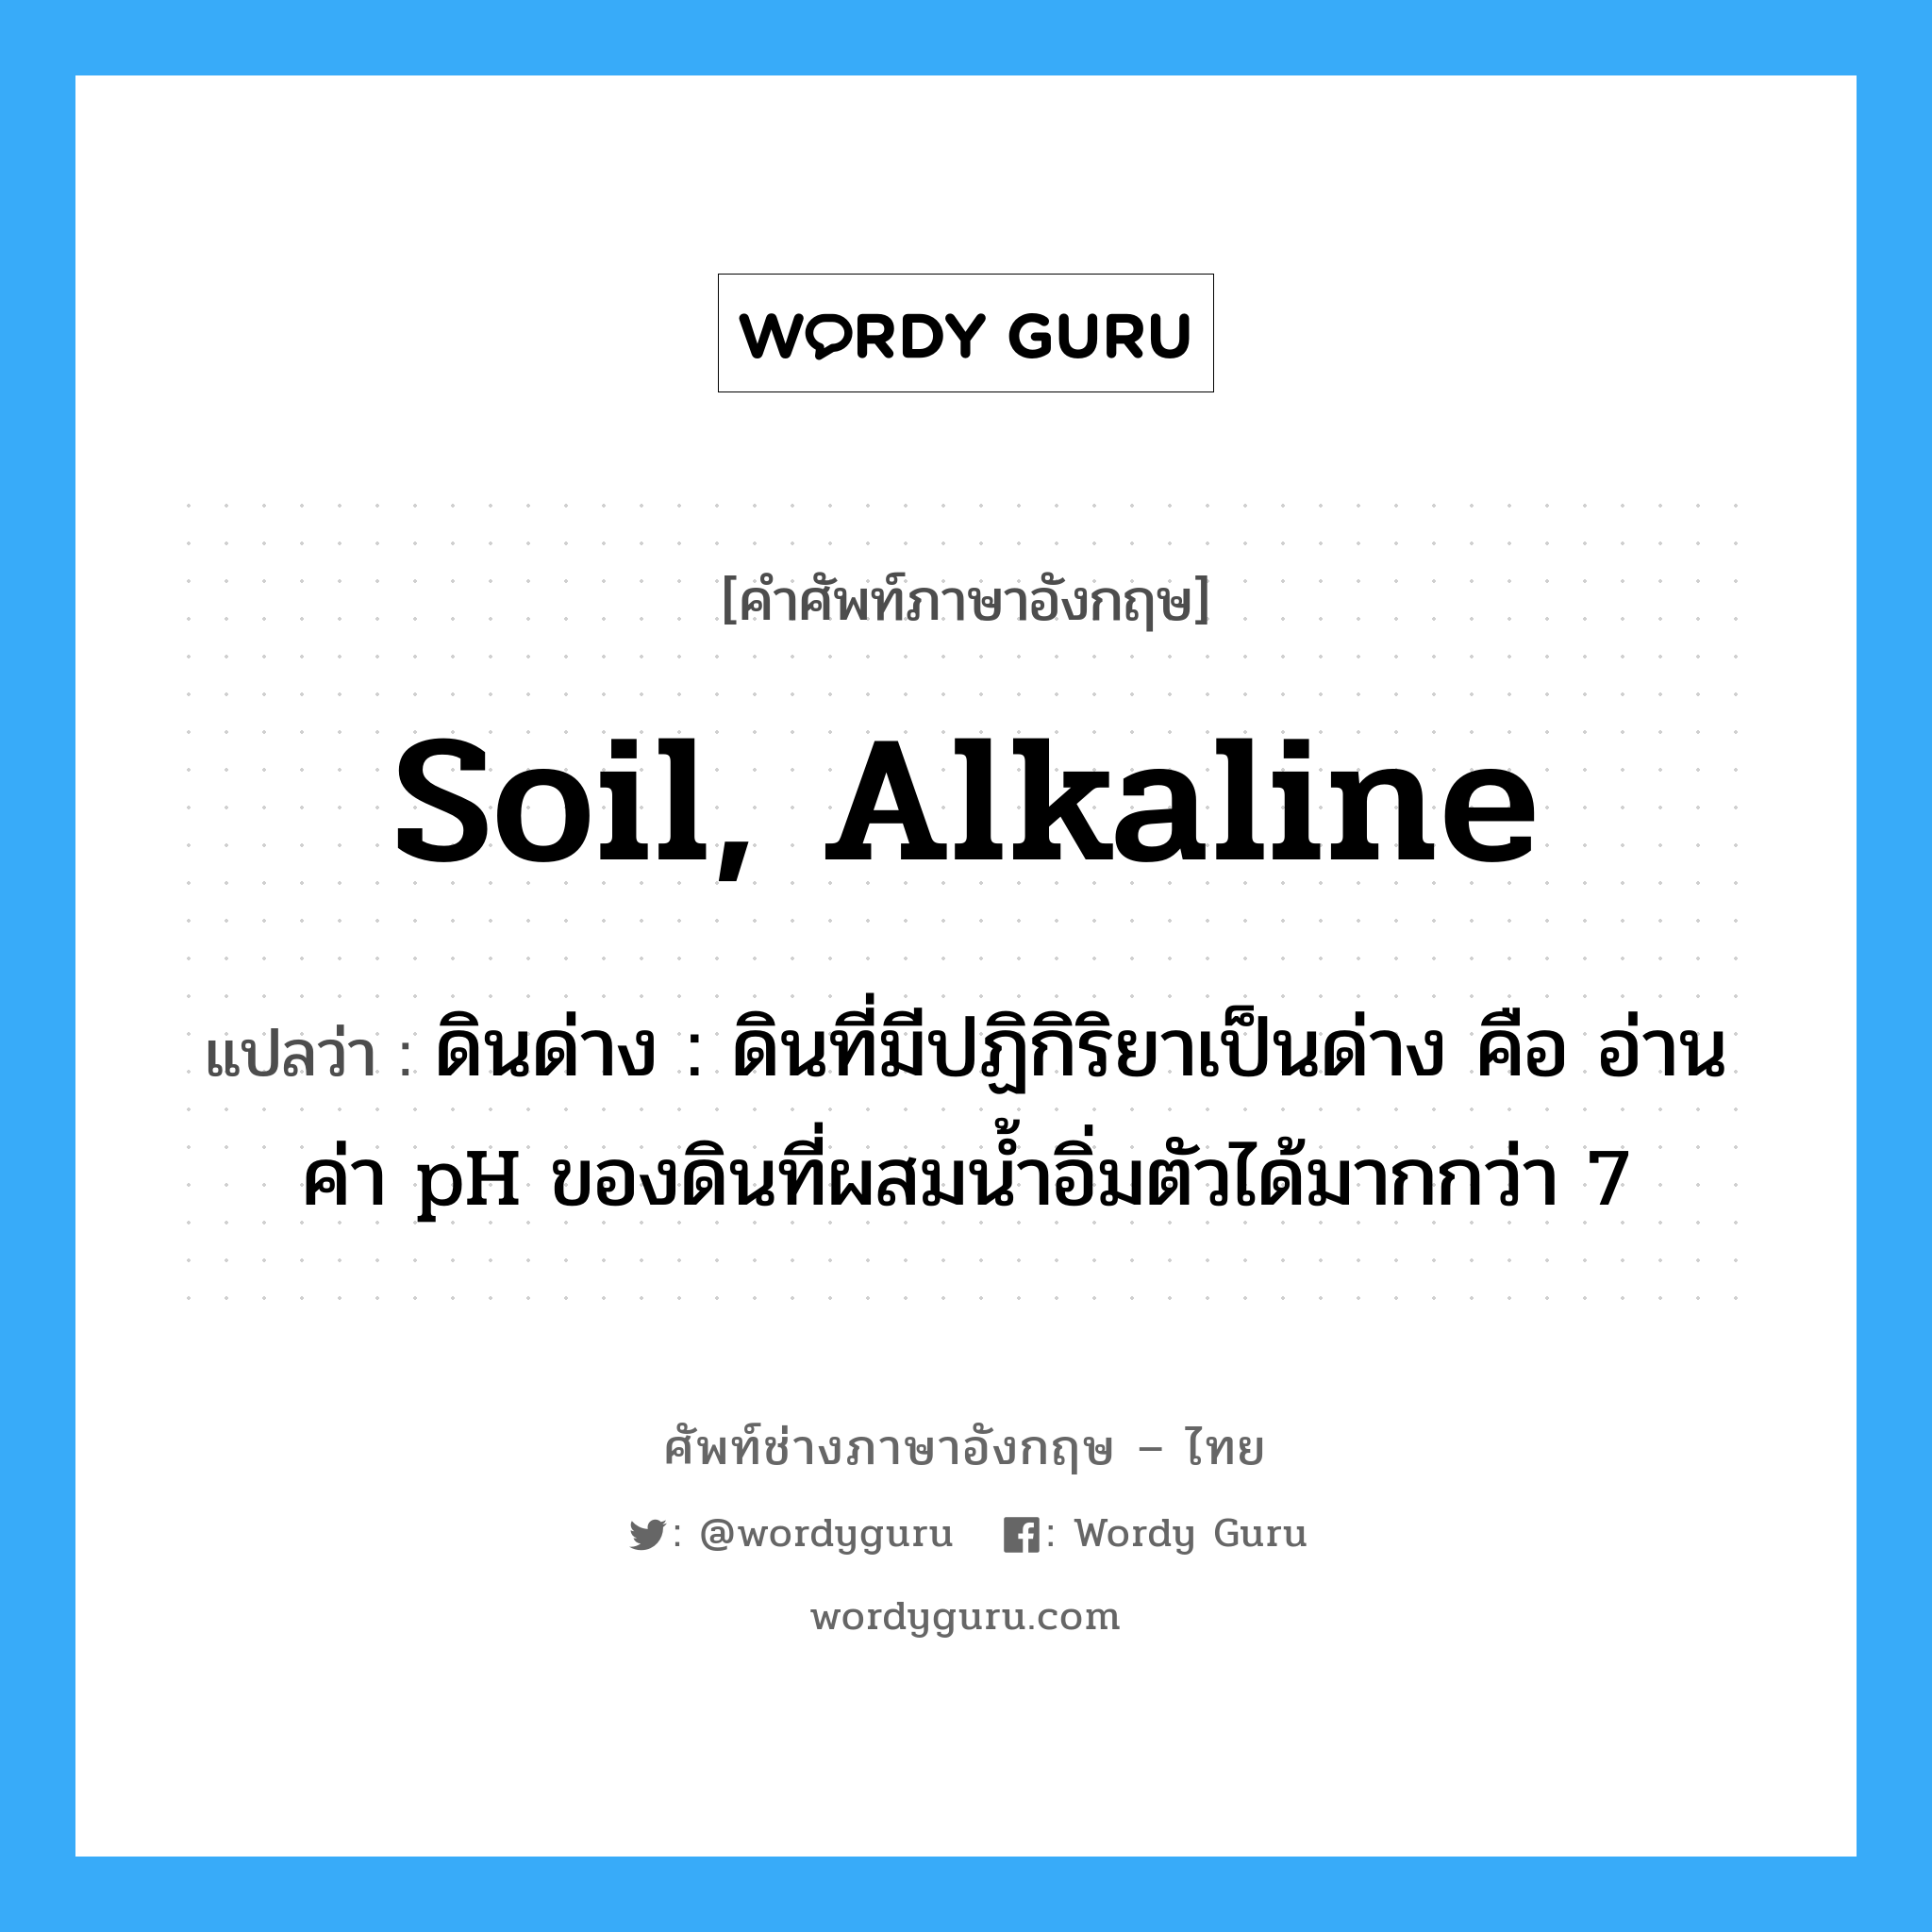 soil, alkaline แปลว่า?, คำศัพท์ช่างภาษาอังกฤษ - ไทย soil, alkaline คำศัพท์ภาษาอังกฤษ soil, alkaline แปลว่า ดินด่าง : ดินที่มีปฏิกิริยาเป็นด่าง คือ อ่านค่า pH ของดินที่ผสมน้ำอิ่มตัวได้มากกว่า 7